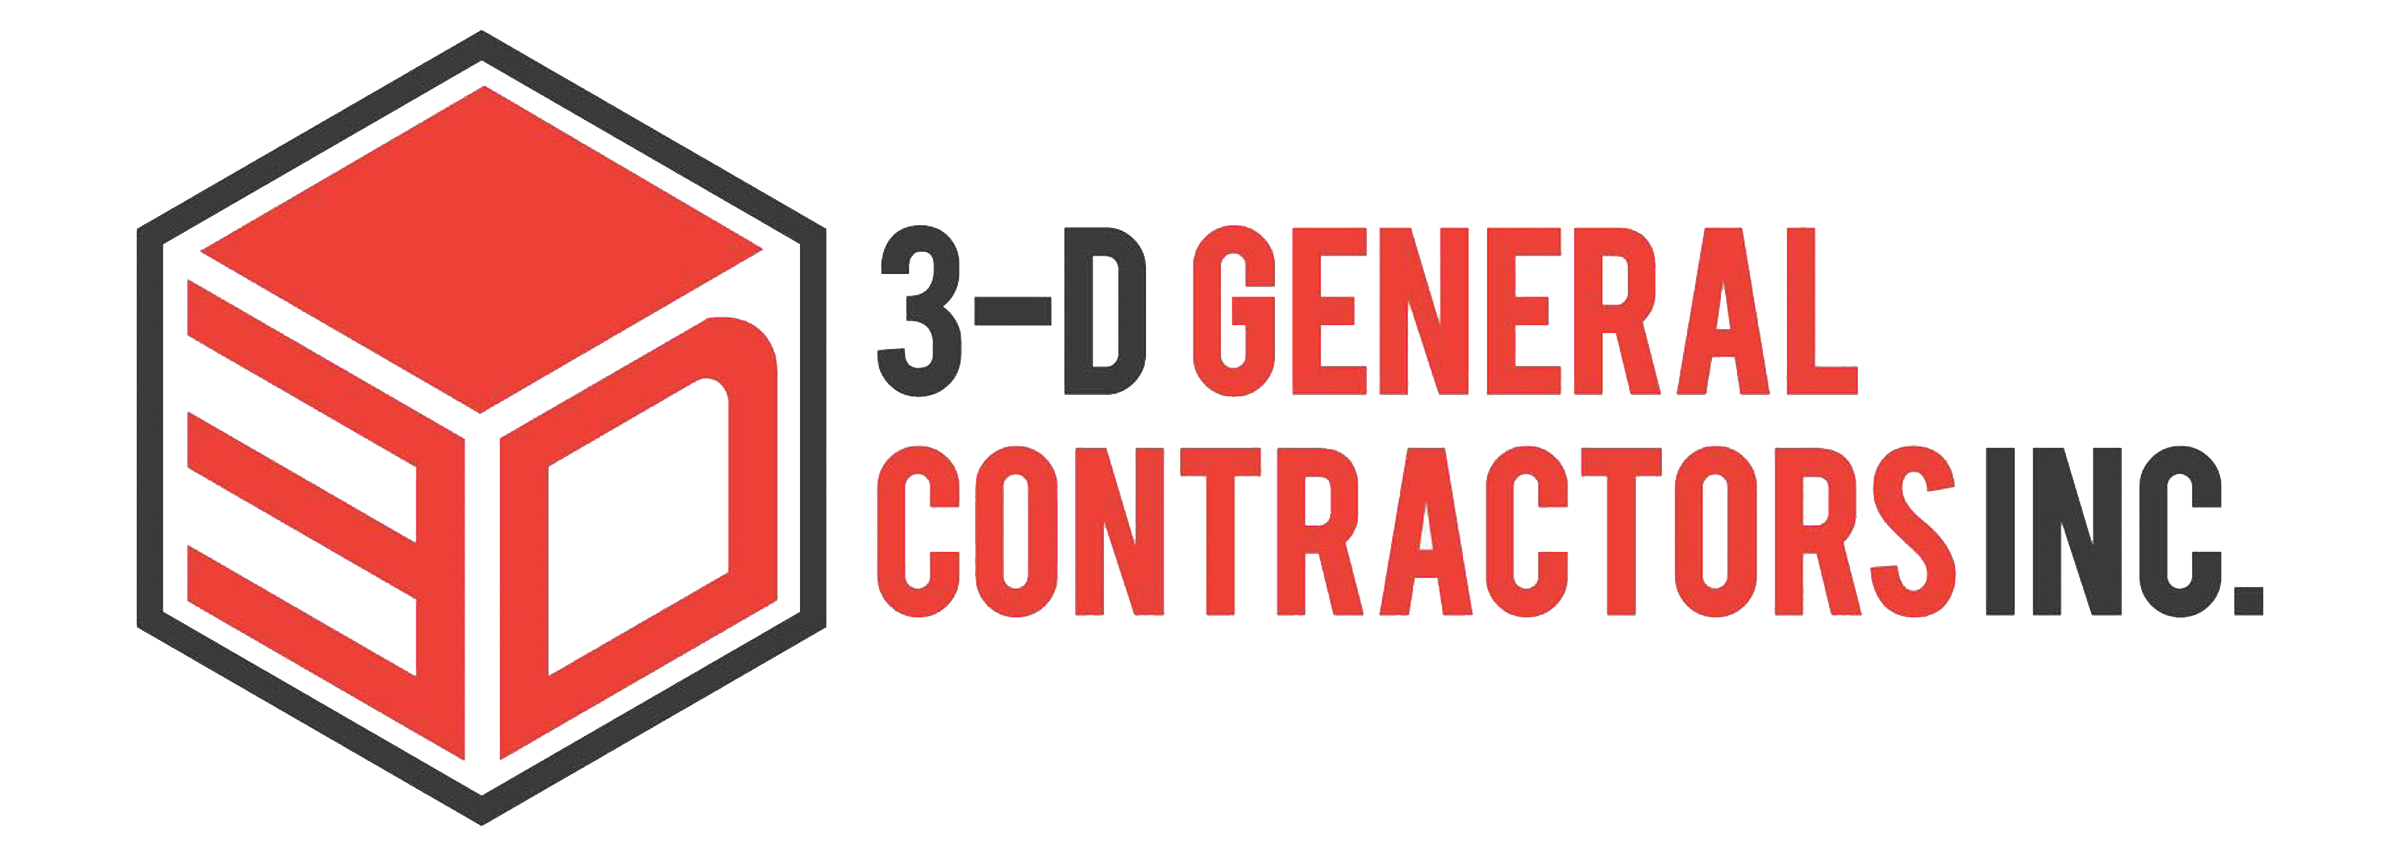 3-D General Contractors Inc.